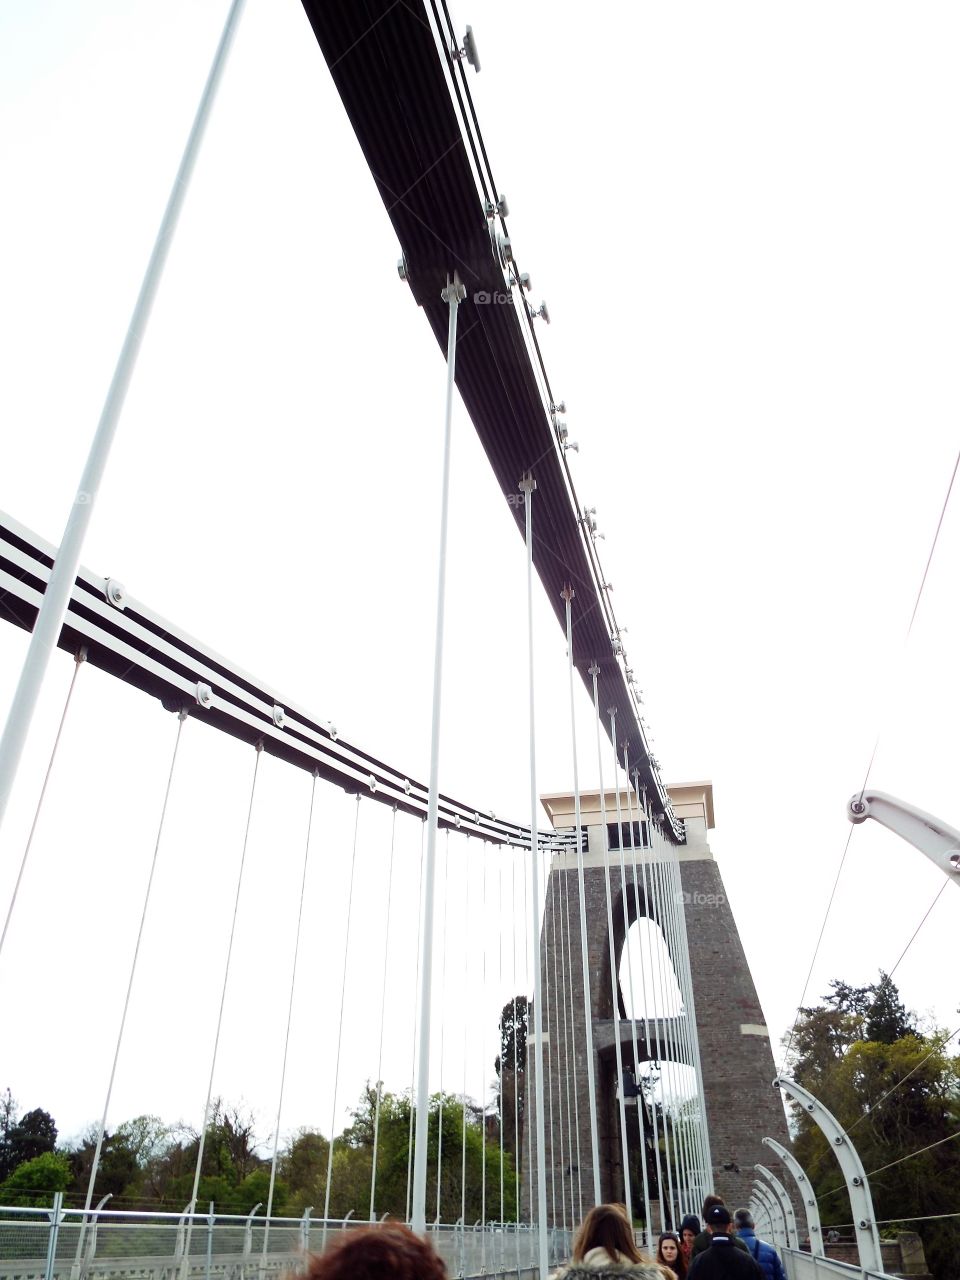 Bristol Suspension Bridge 